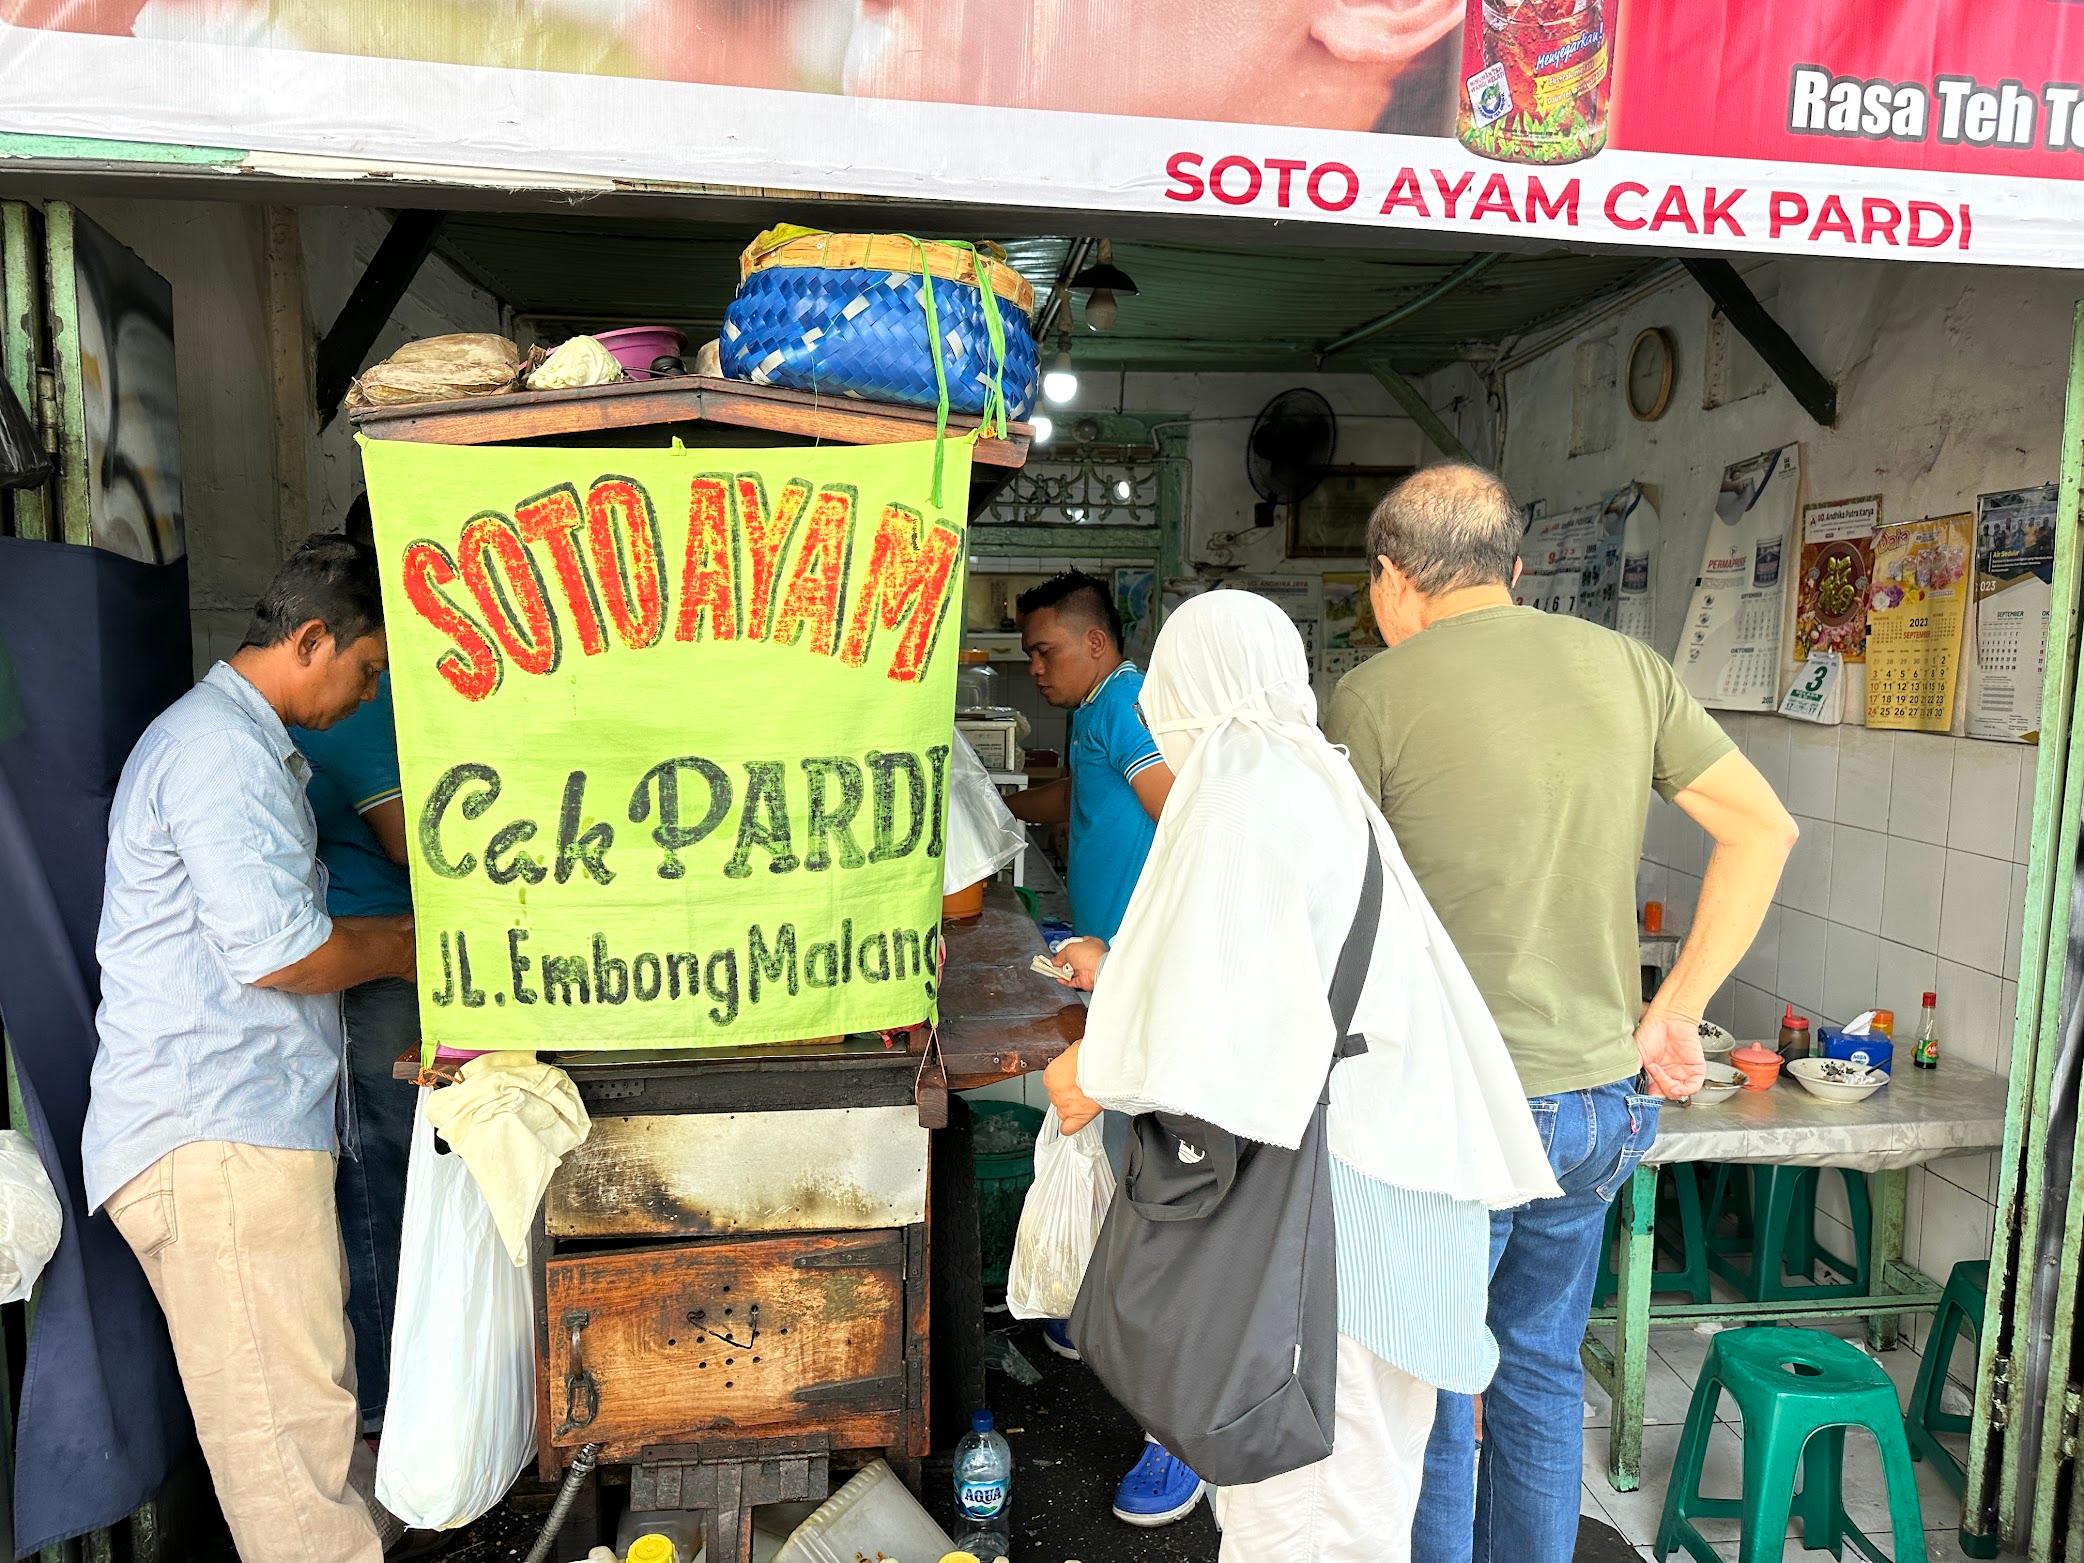 Soto Ayam Cak Pardi review